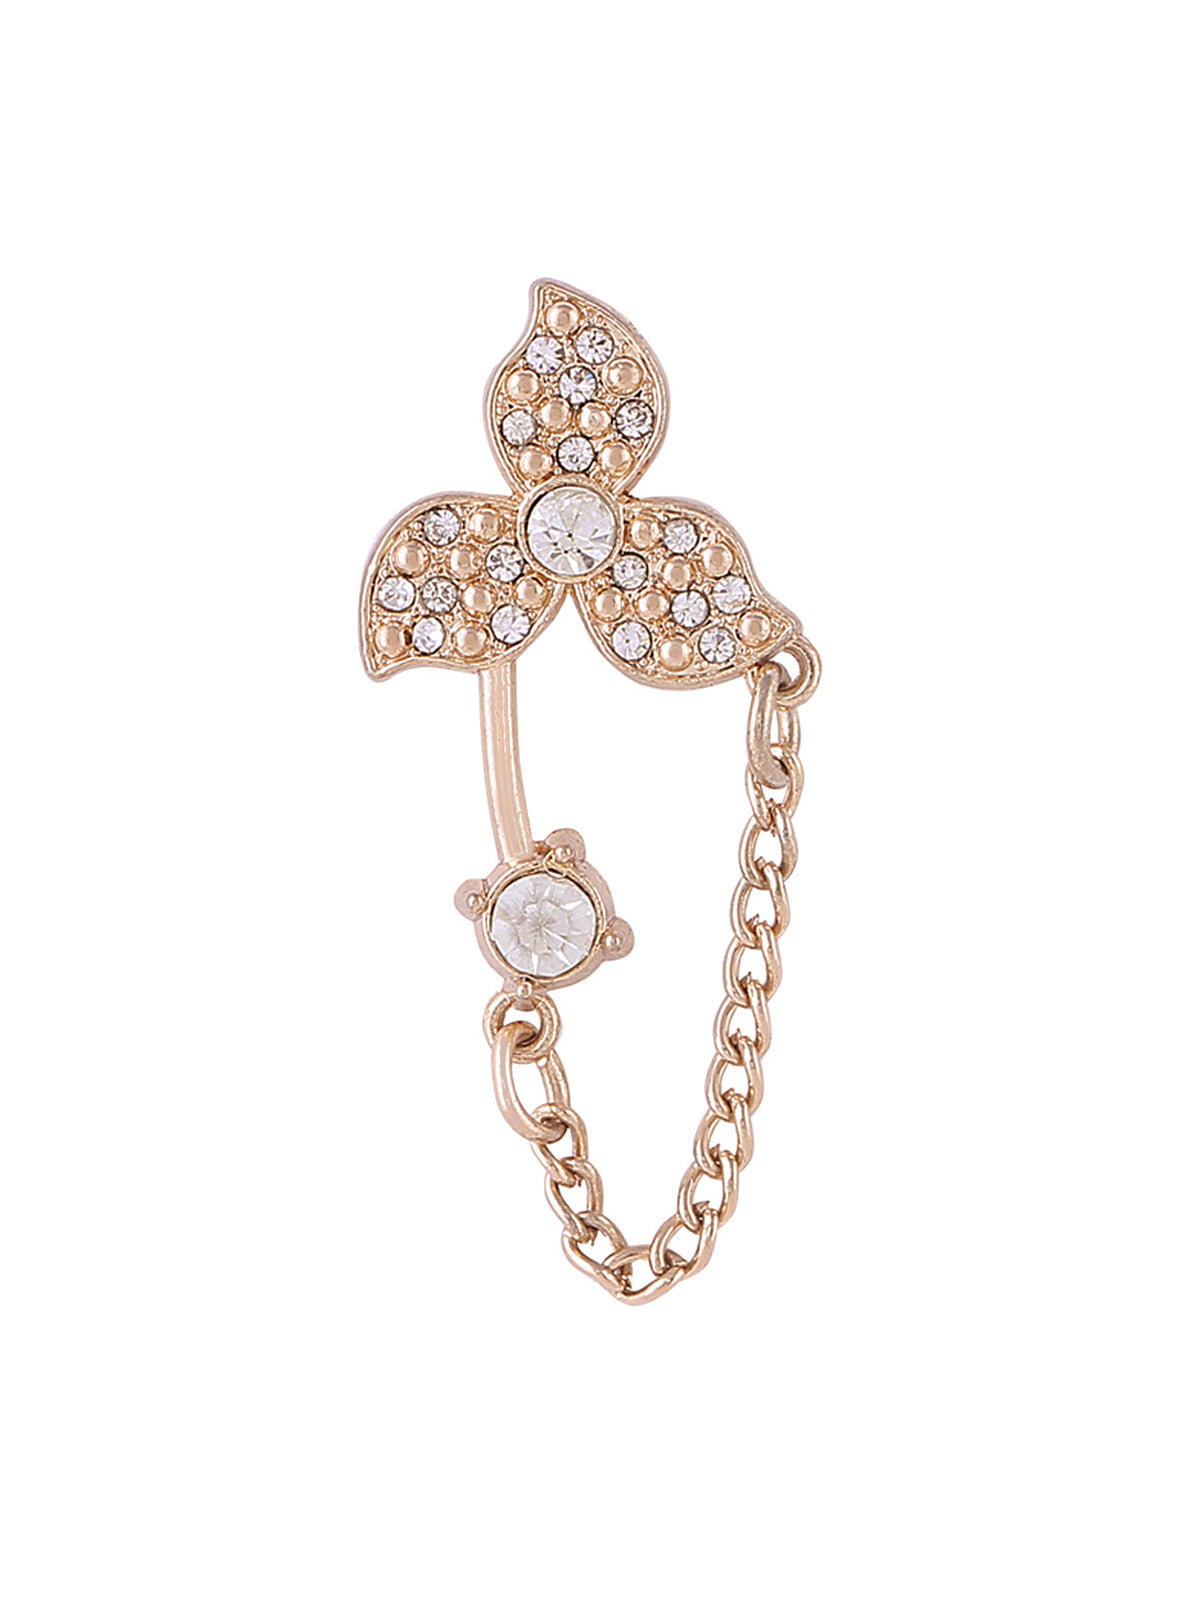 Cute & Sober Golden Diamond Chain Brooch